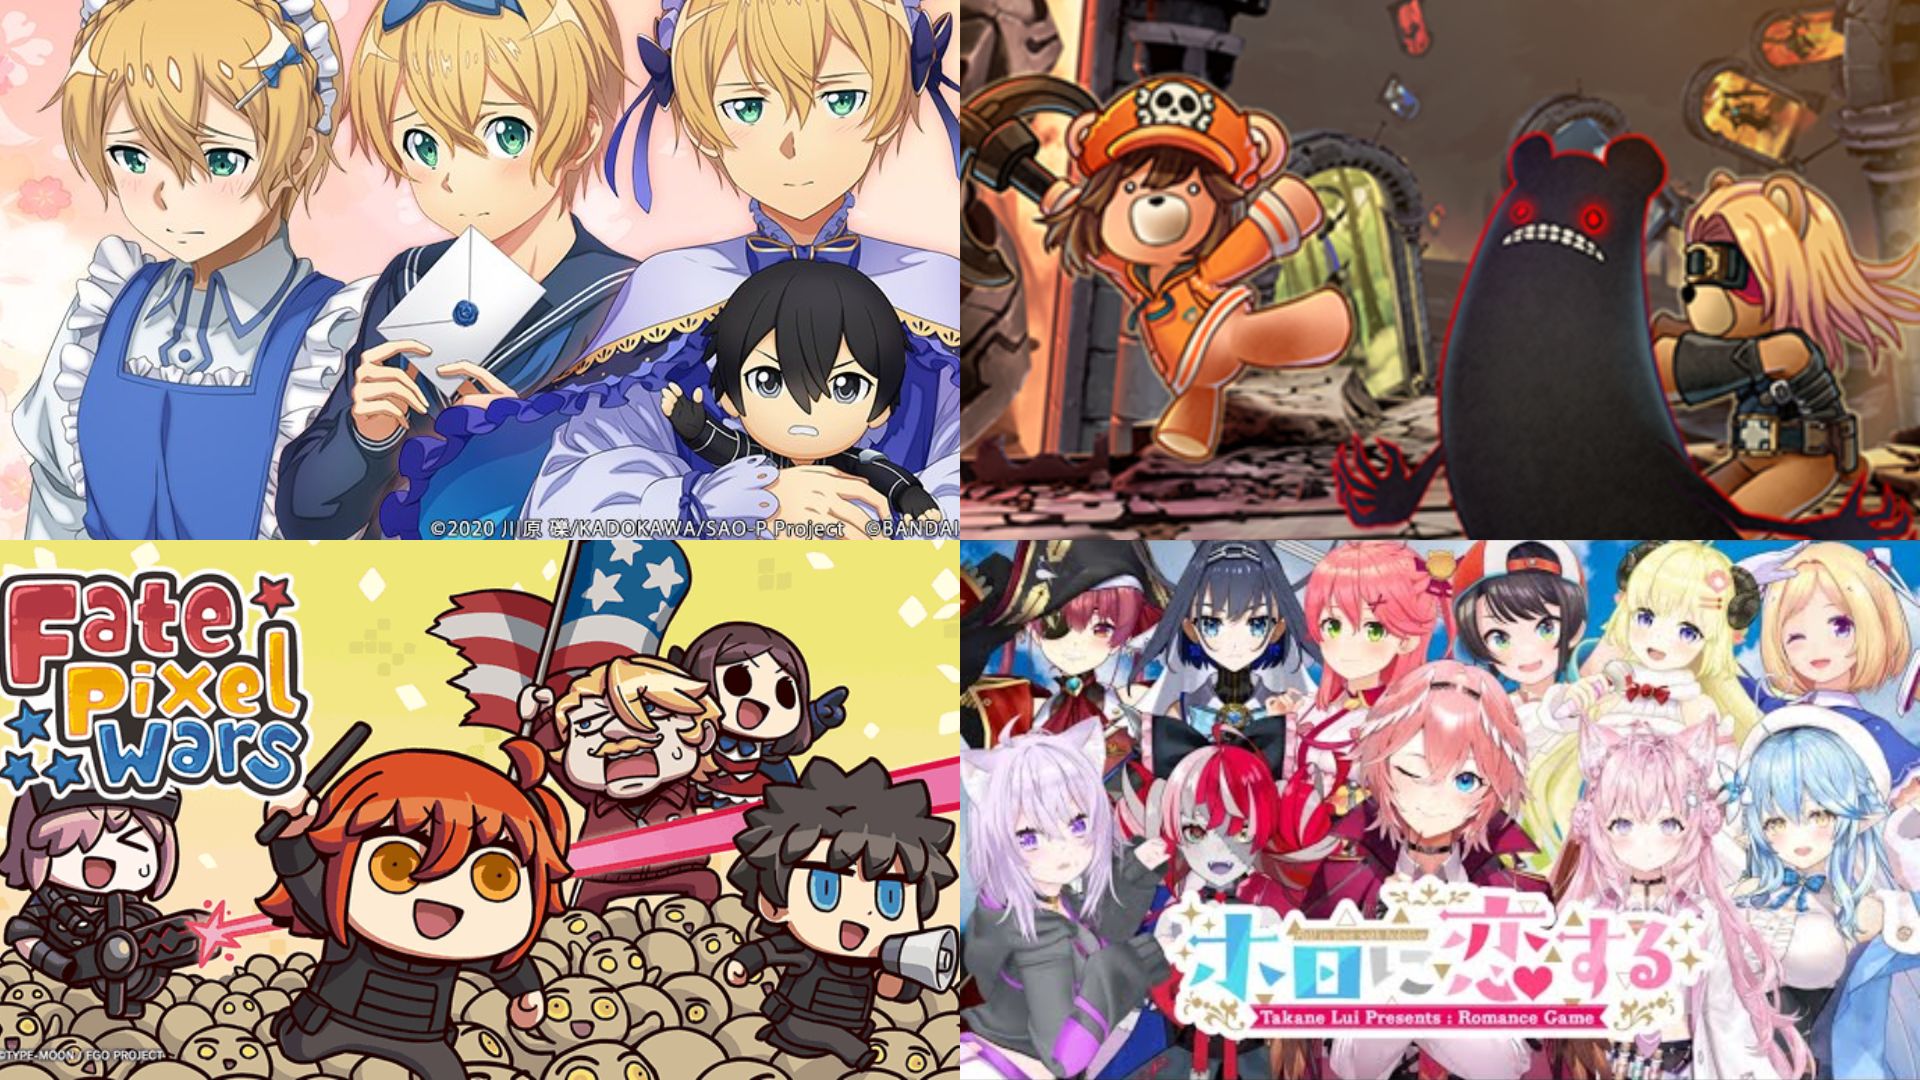 Japanese Games, Anime, Hololive VTubers Celebrate April Fools 2022